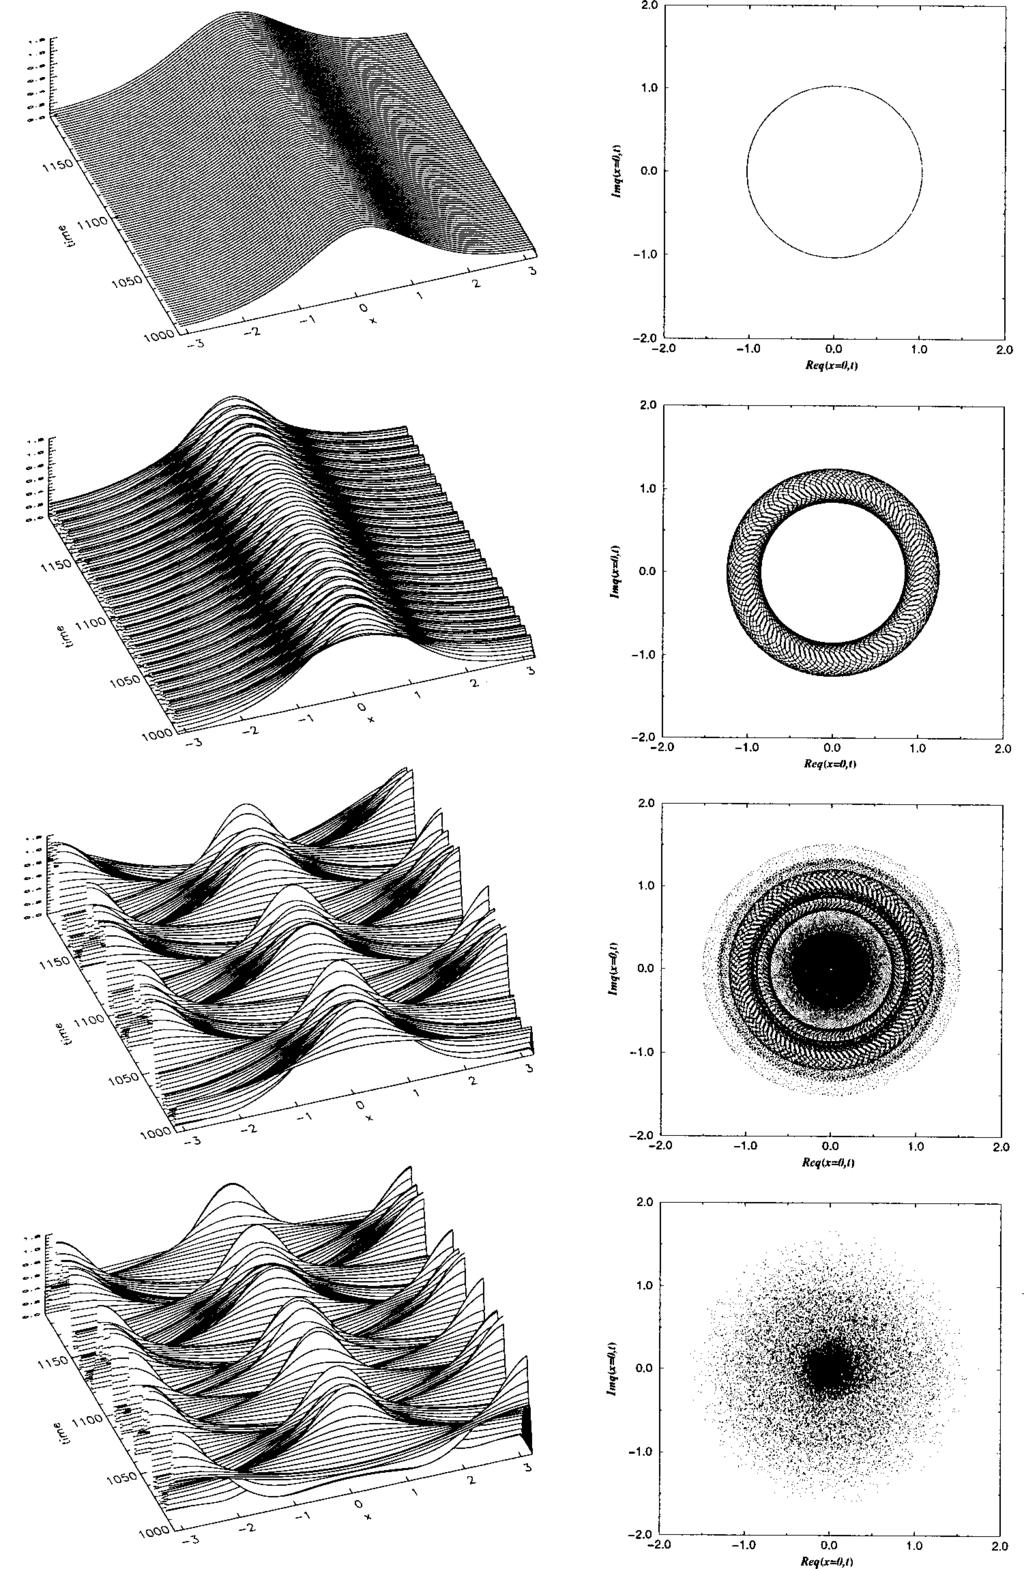 4134 J. Math. Phys., Vol. 41, No. 6, June 2000 D. Cai and D. W. McLaughlin FIG. 5. Perturbed solitonic dynamics.